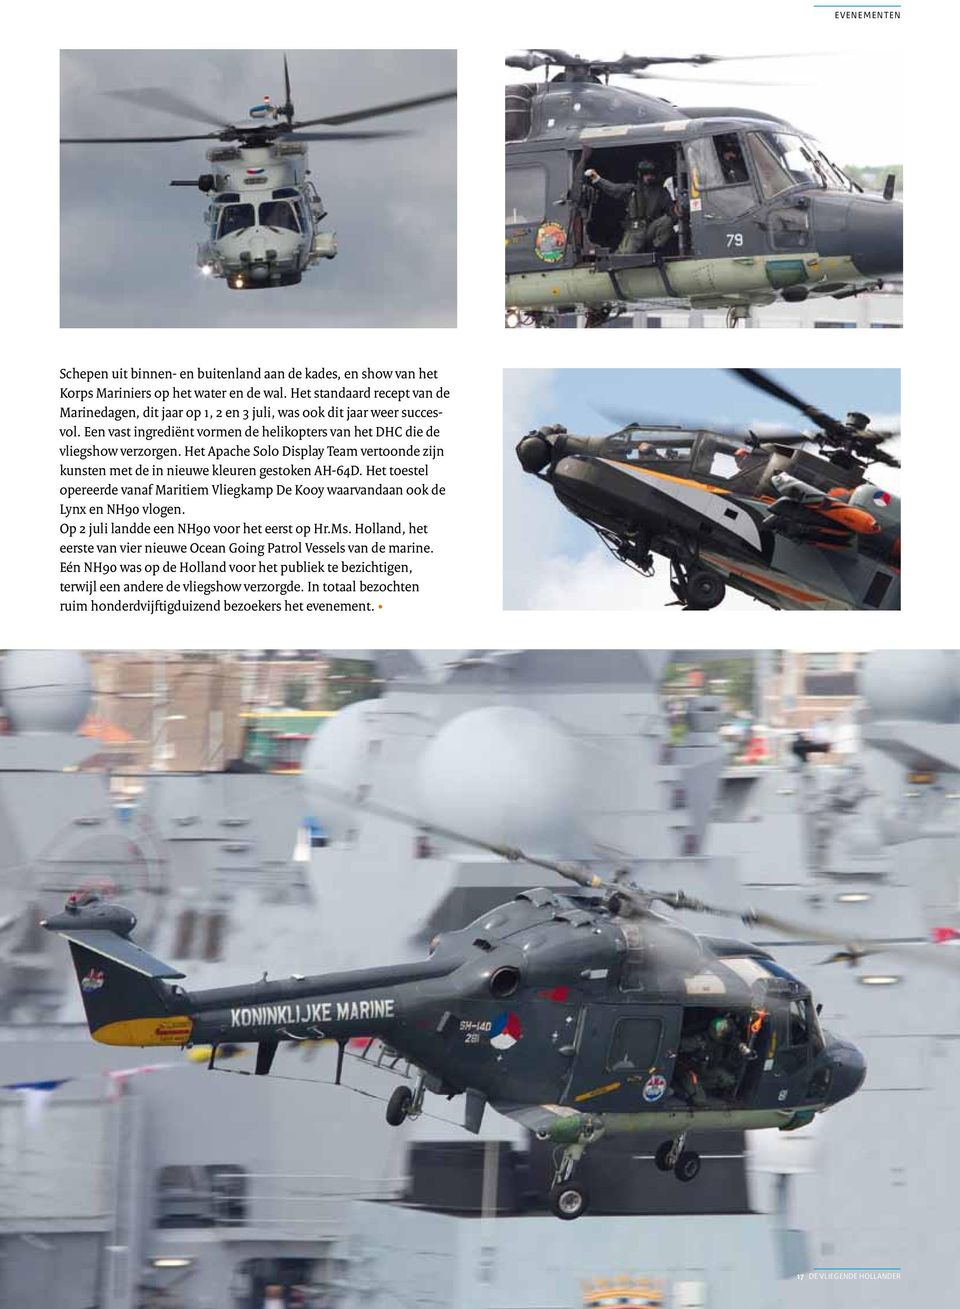 Het Apache Solo Display Team vertoonde zijn kunsten met de in nieuwe kleuren gestoken AH-64D. Het toestel opereerde vanaf Maritiem Vliegkamp De Kooy waarvandaan ook de Lynx en NH90 vlogen.